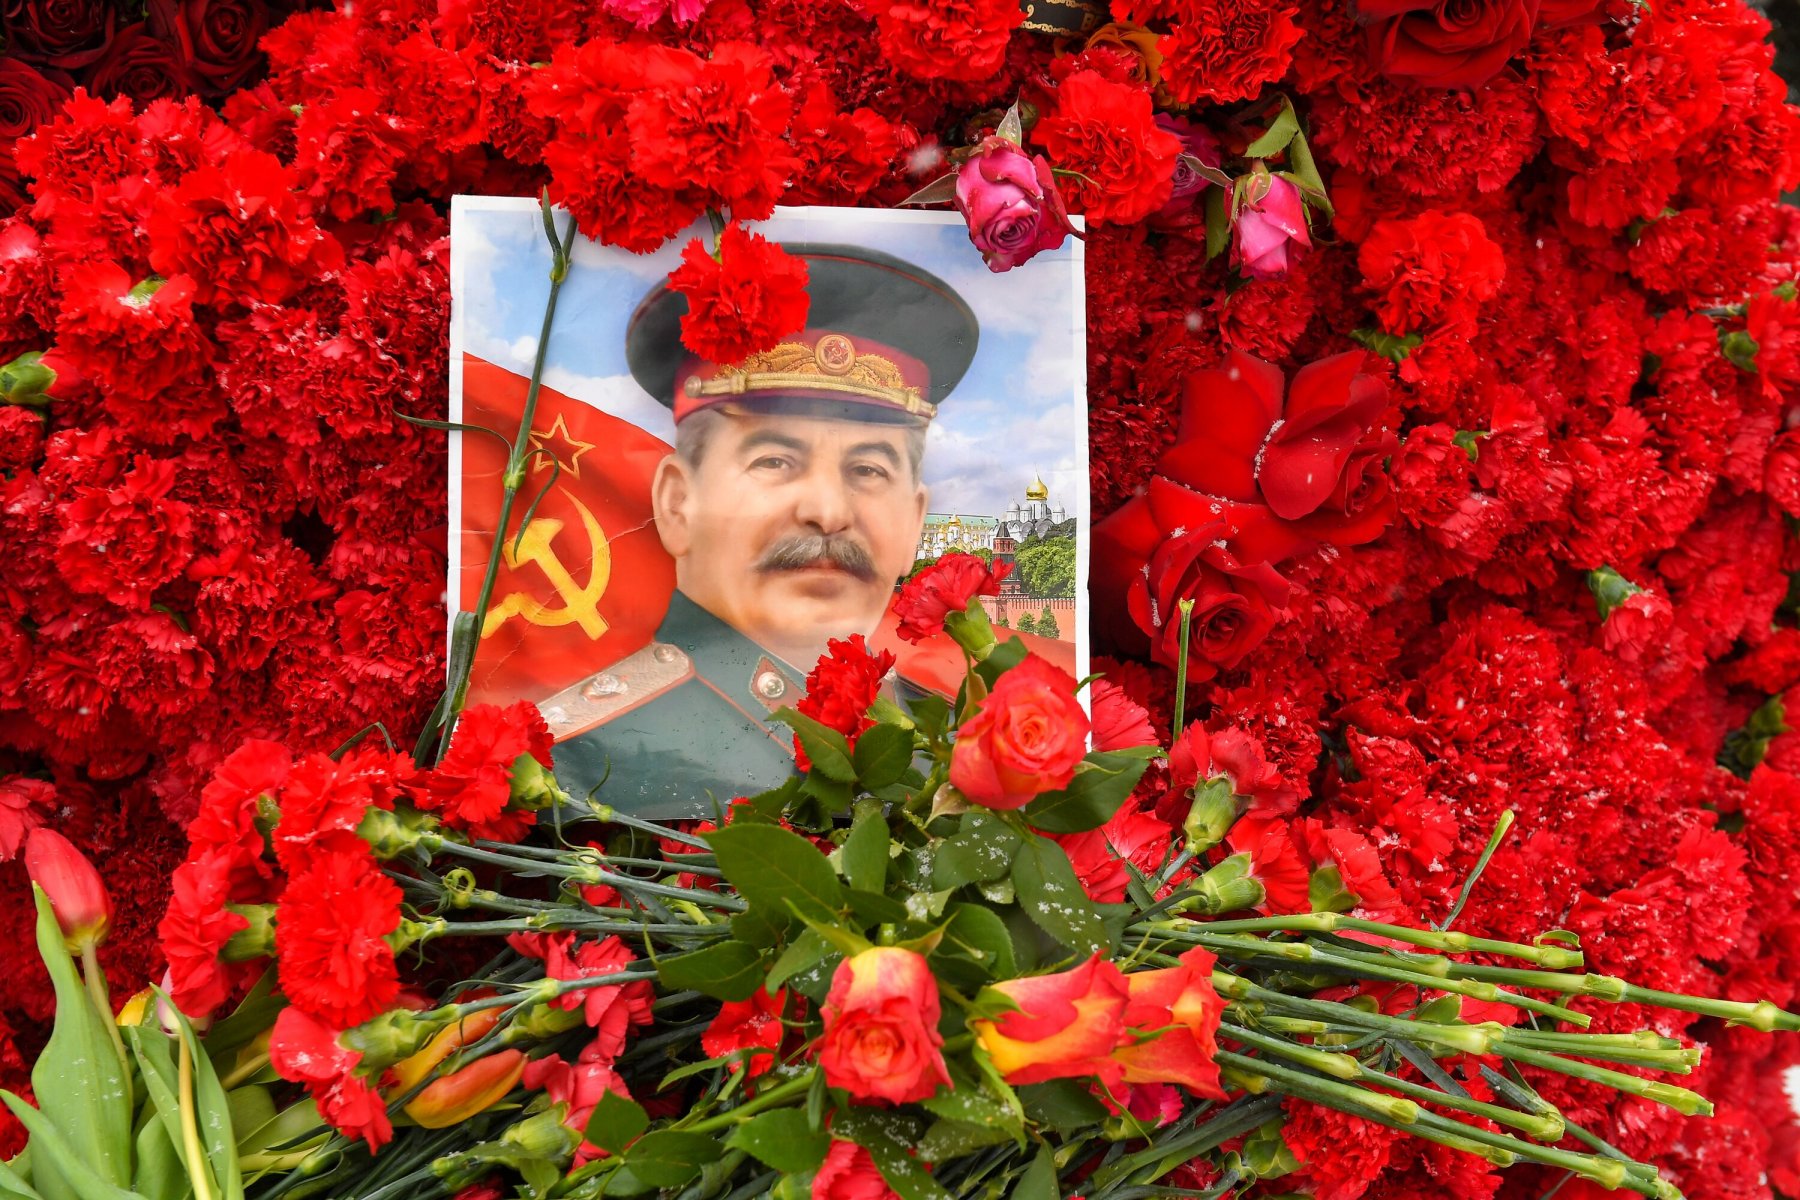 Оригинал письма Сталина к Жданову продается на торгах за 500 тысяч рублей